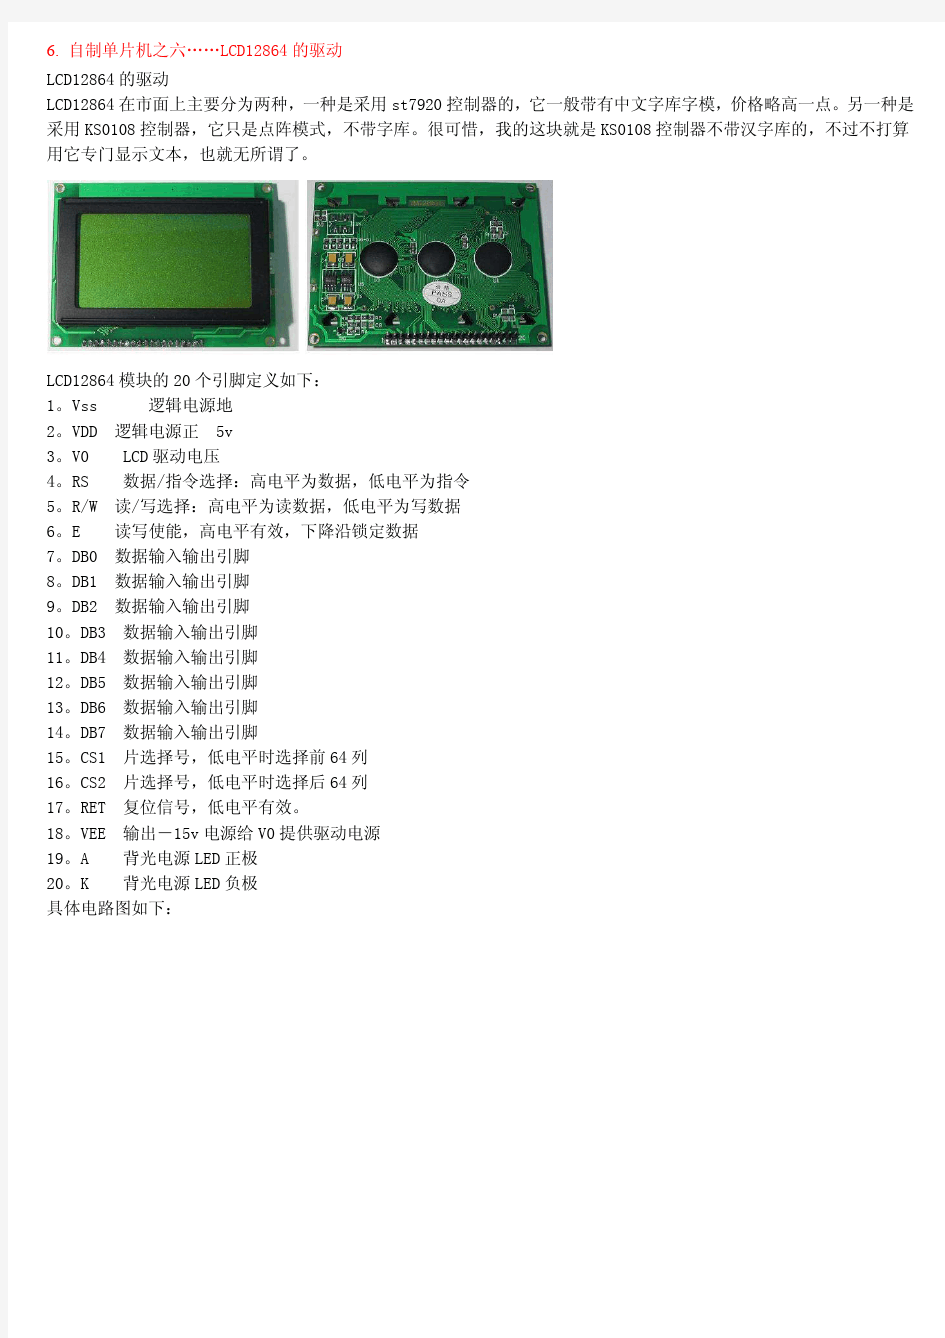 LCD12864的驱动